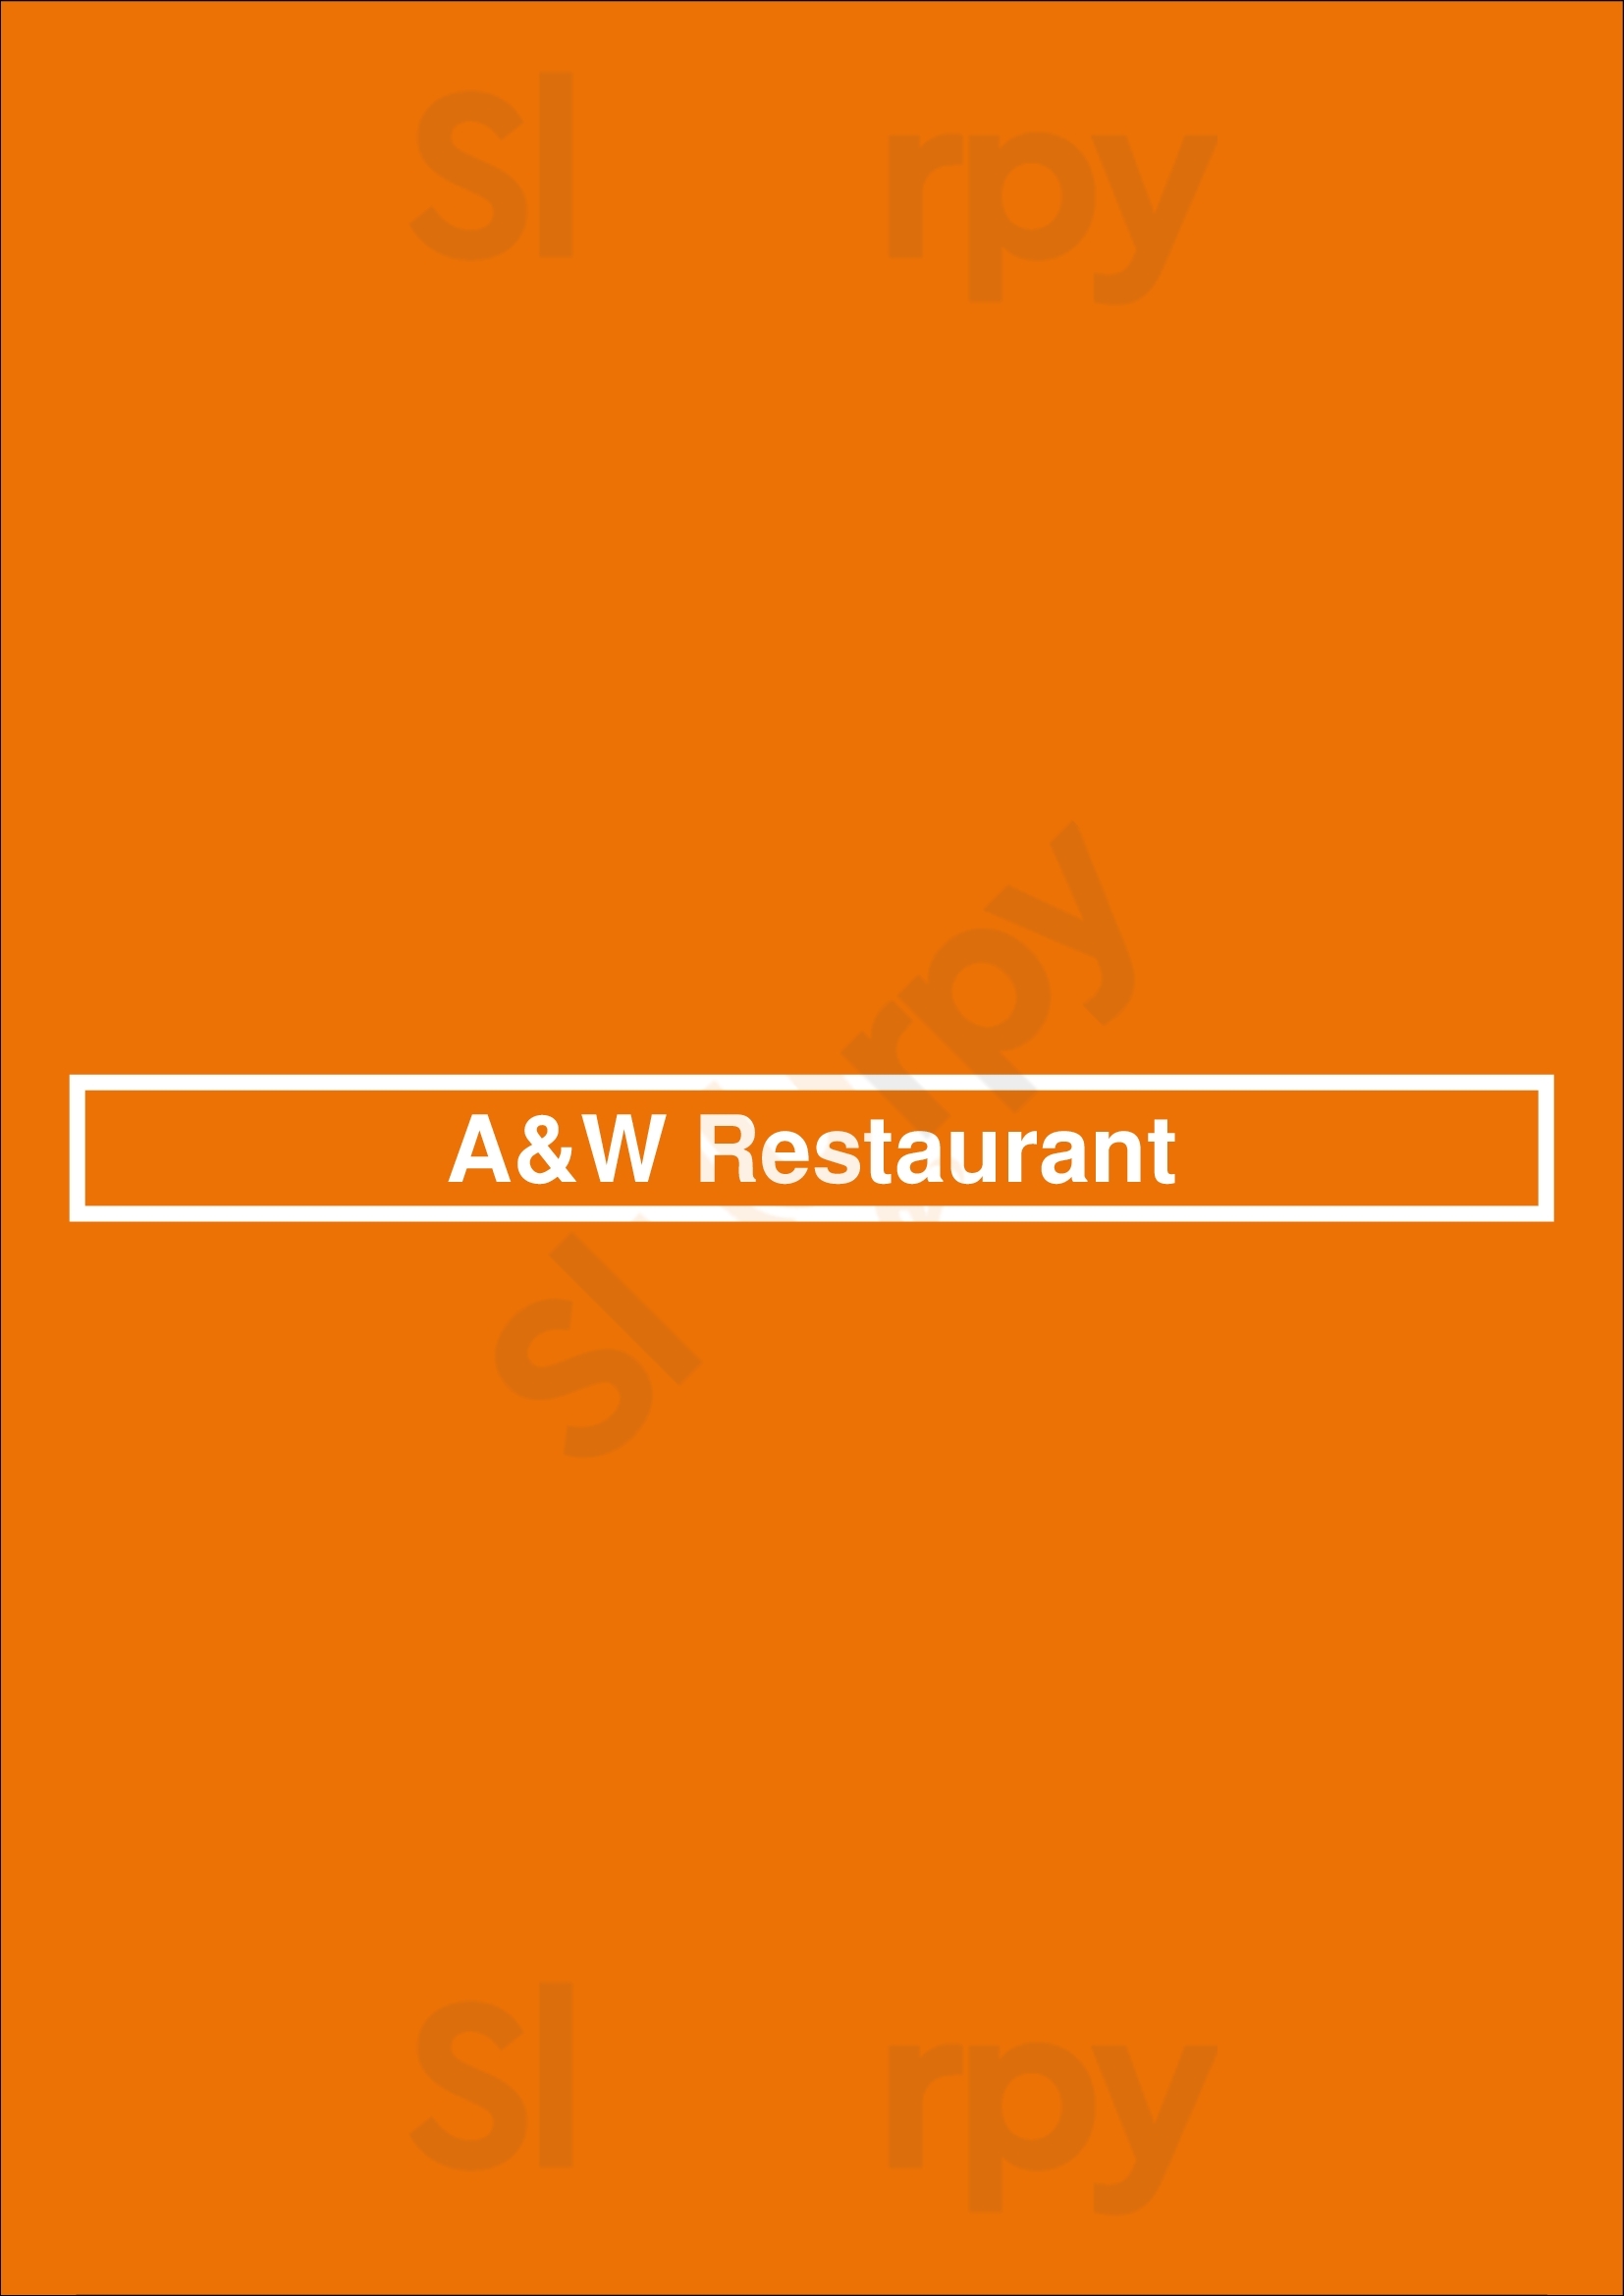 A&w Restaurant Calgary Menu - 1